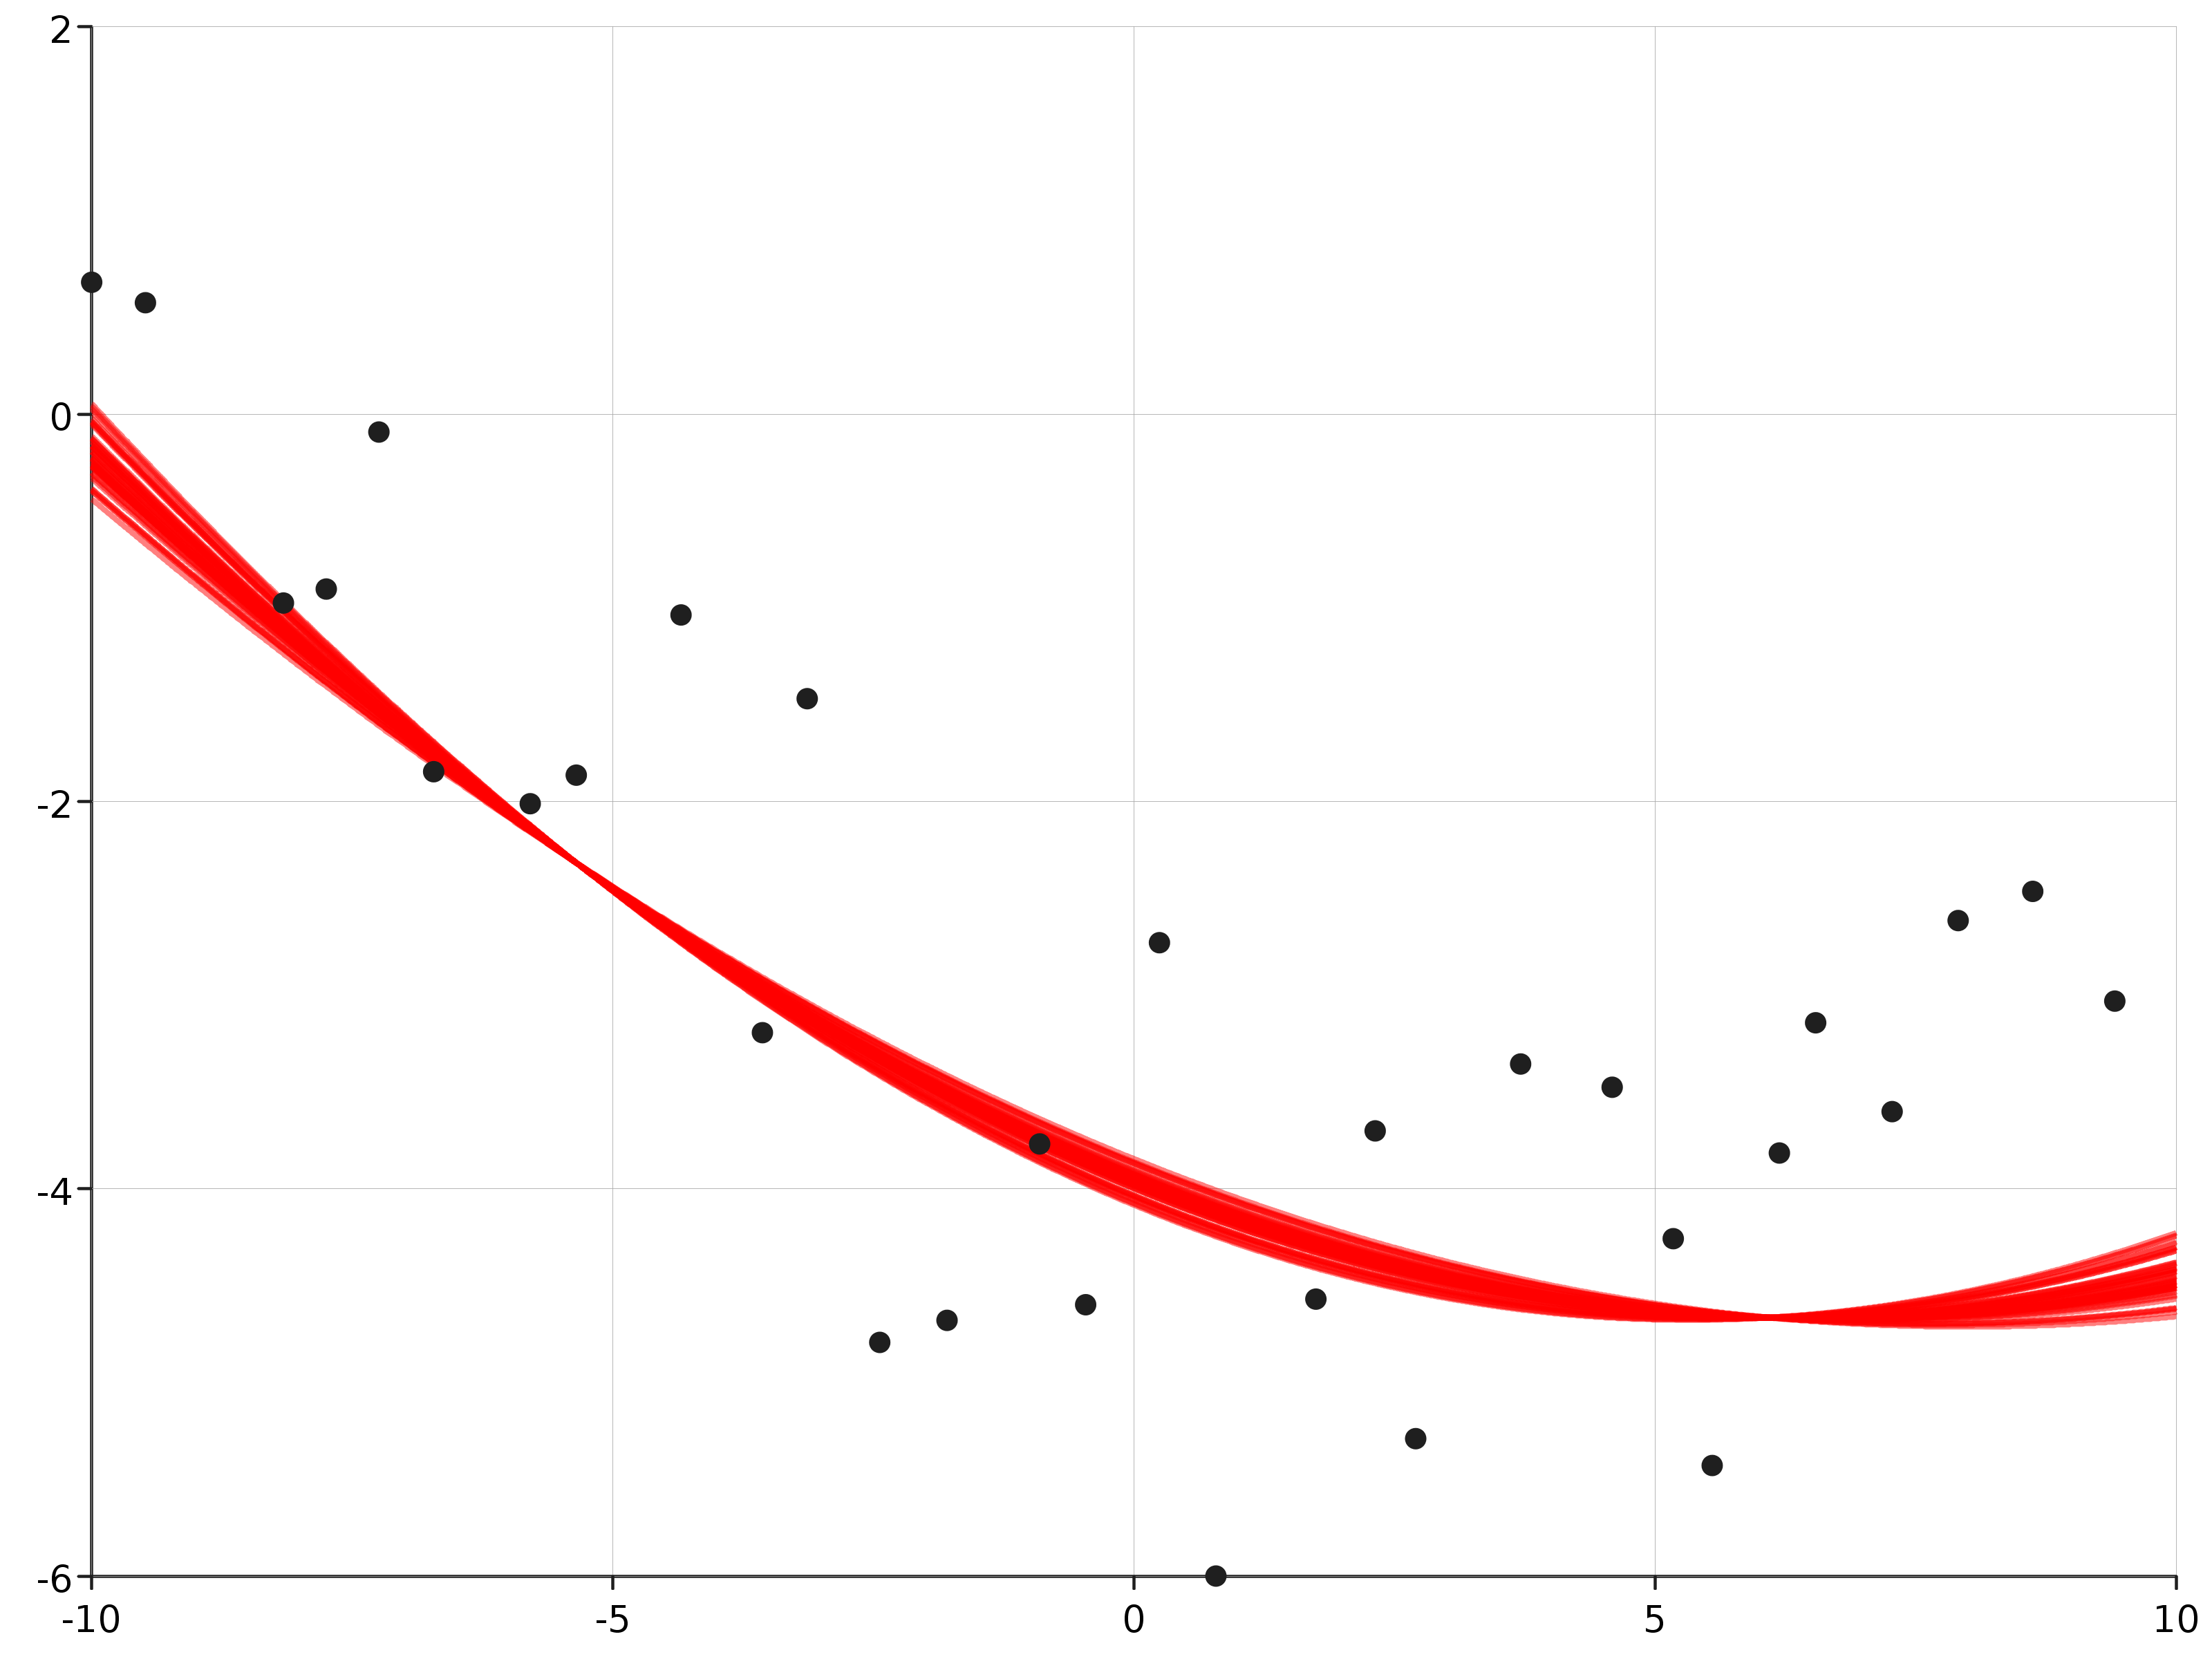 Posterior predictive distribution